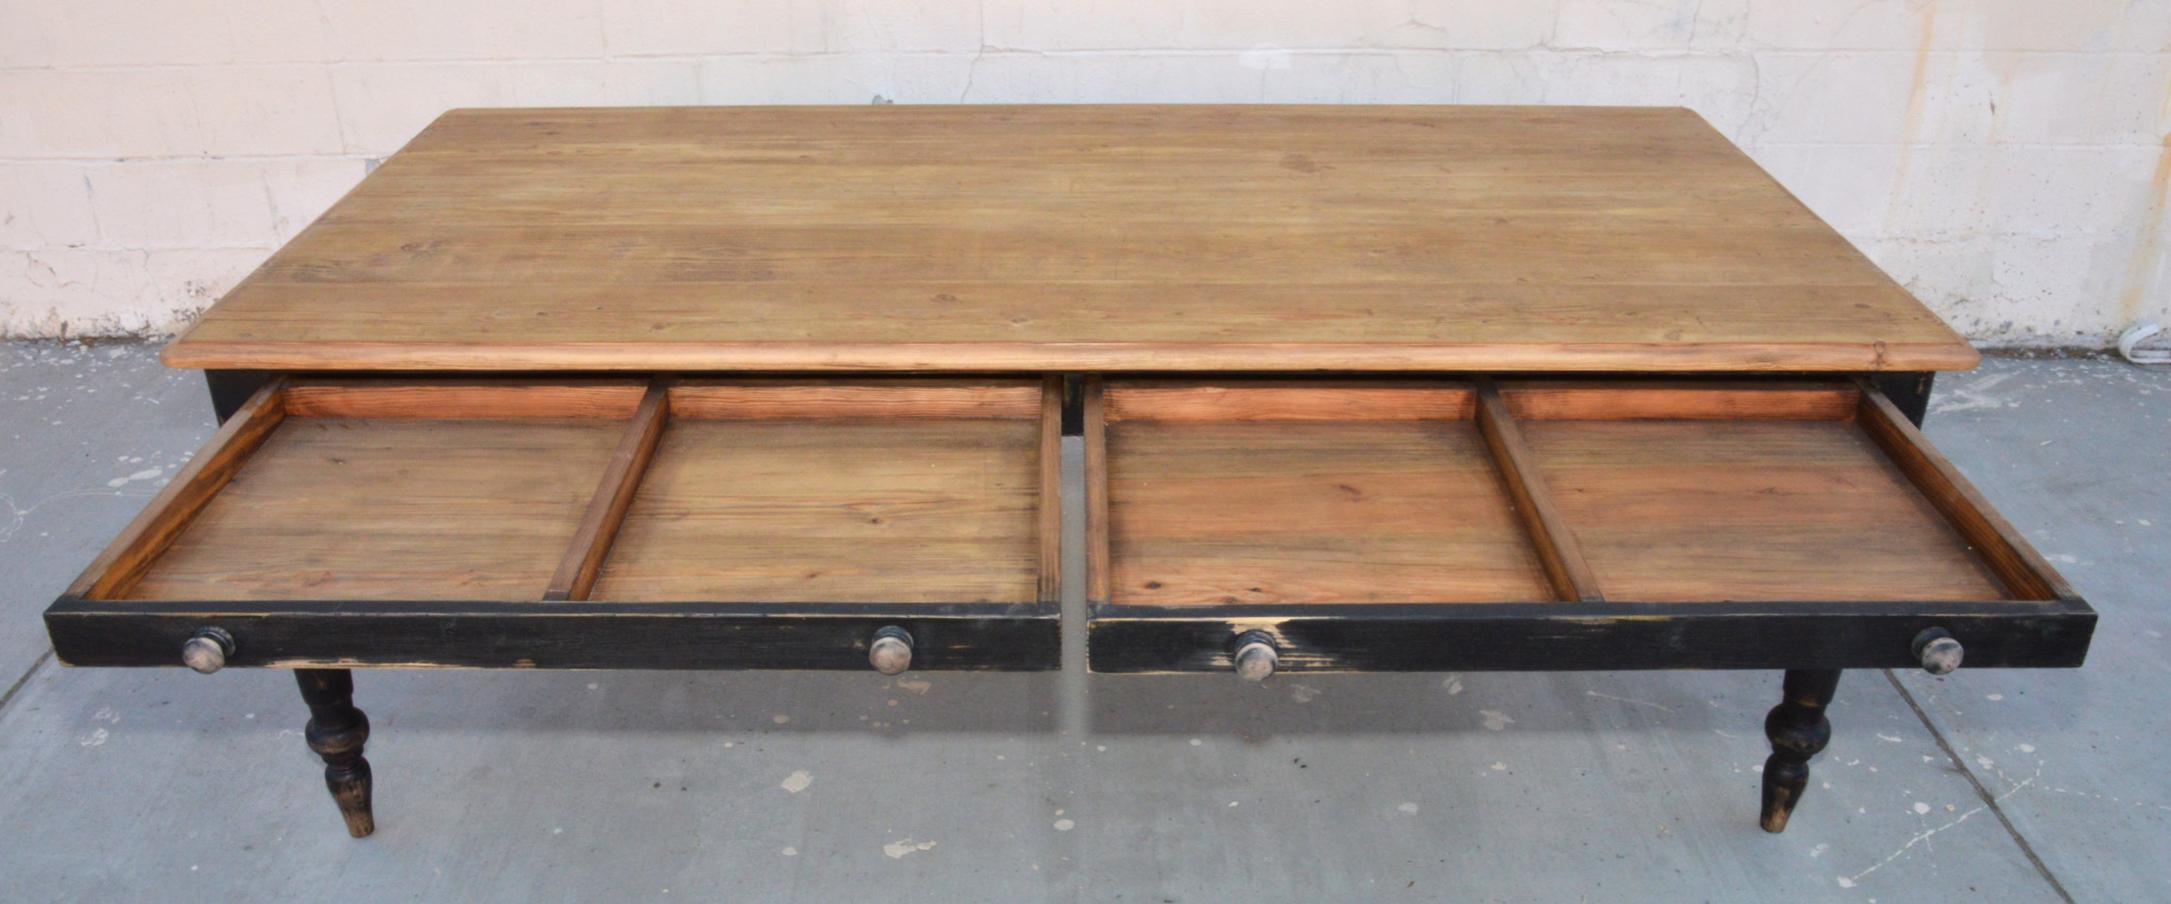 reclaimed wood farmhouse table